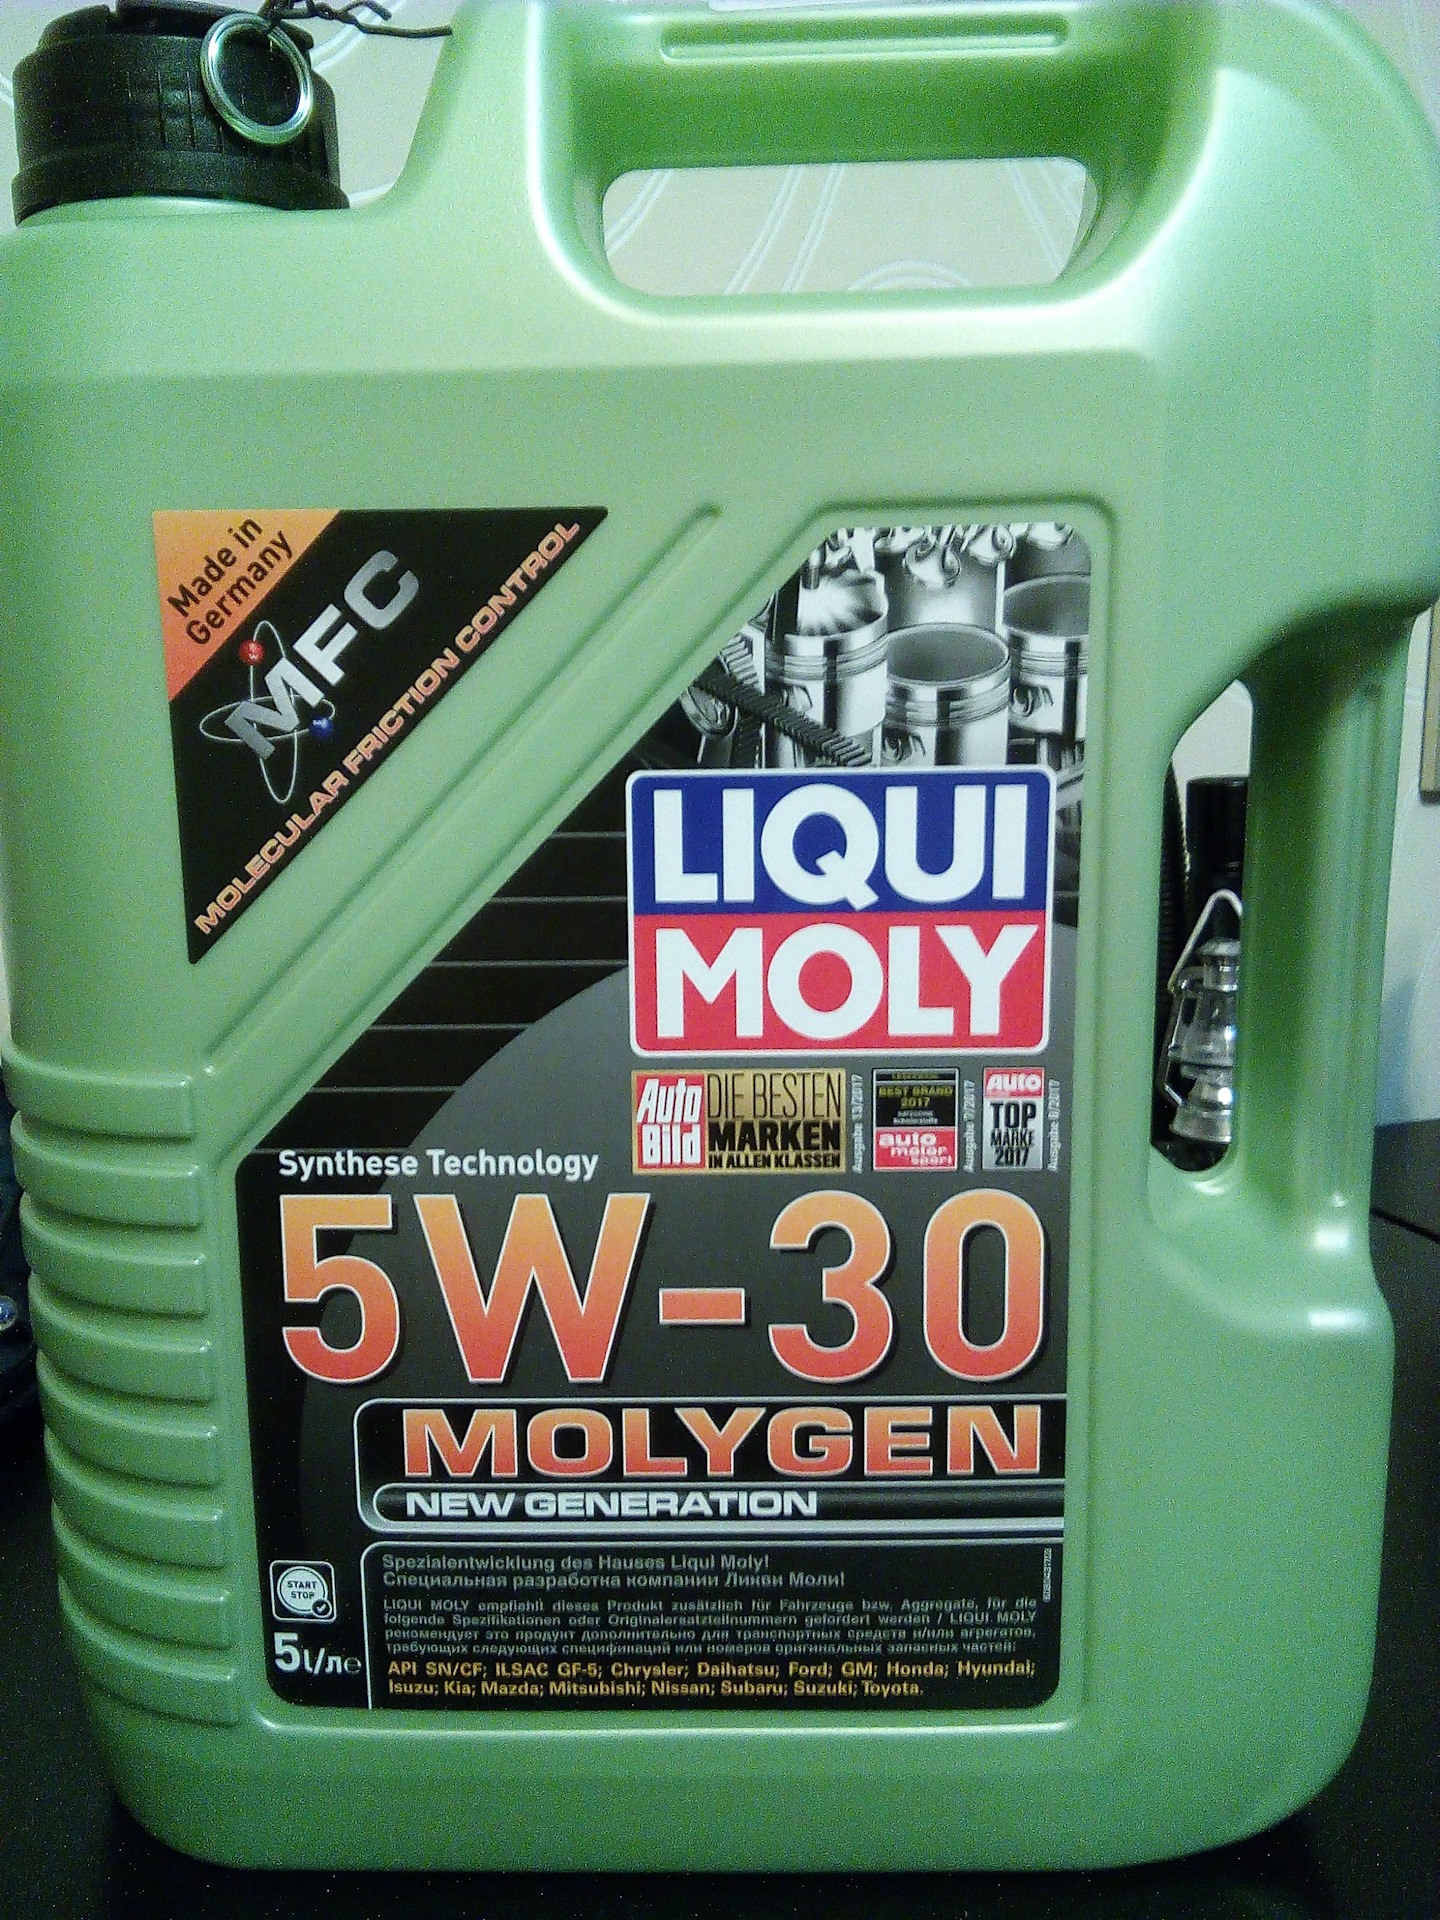 Ликви моли 0w30. Liqui Moly молиген. Ликви моли 5w30. Моторное масло Liqui Moly Molygen. Молиген 5w30.